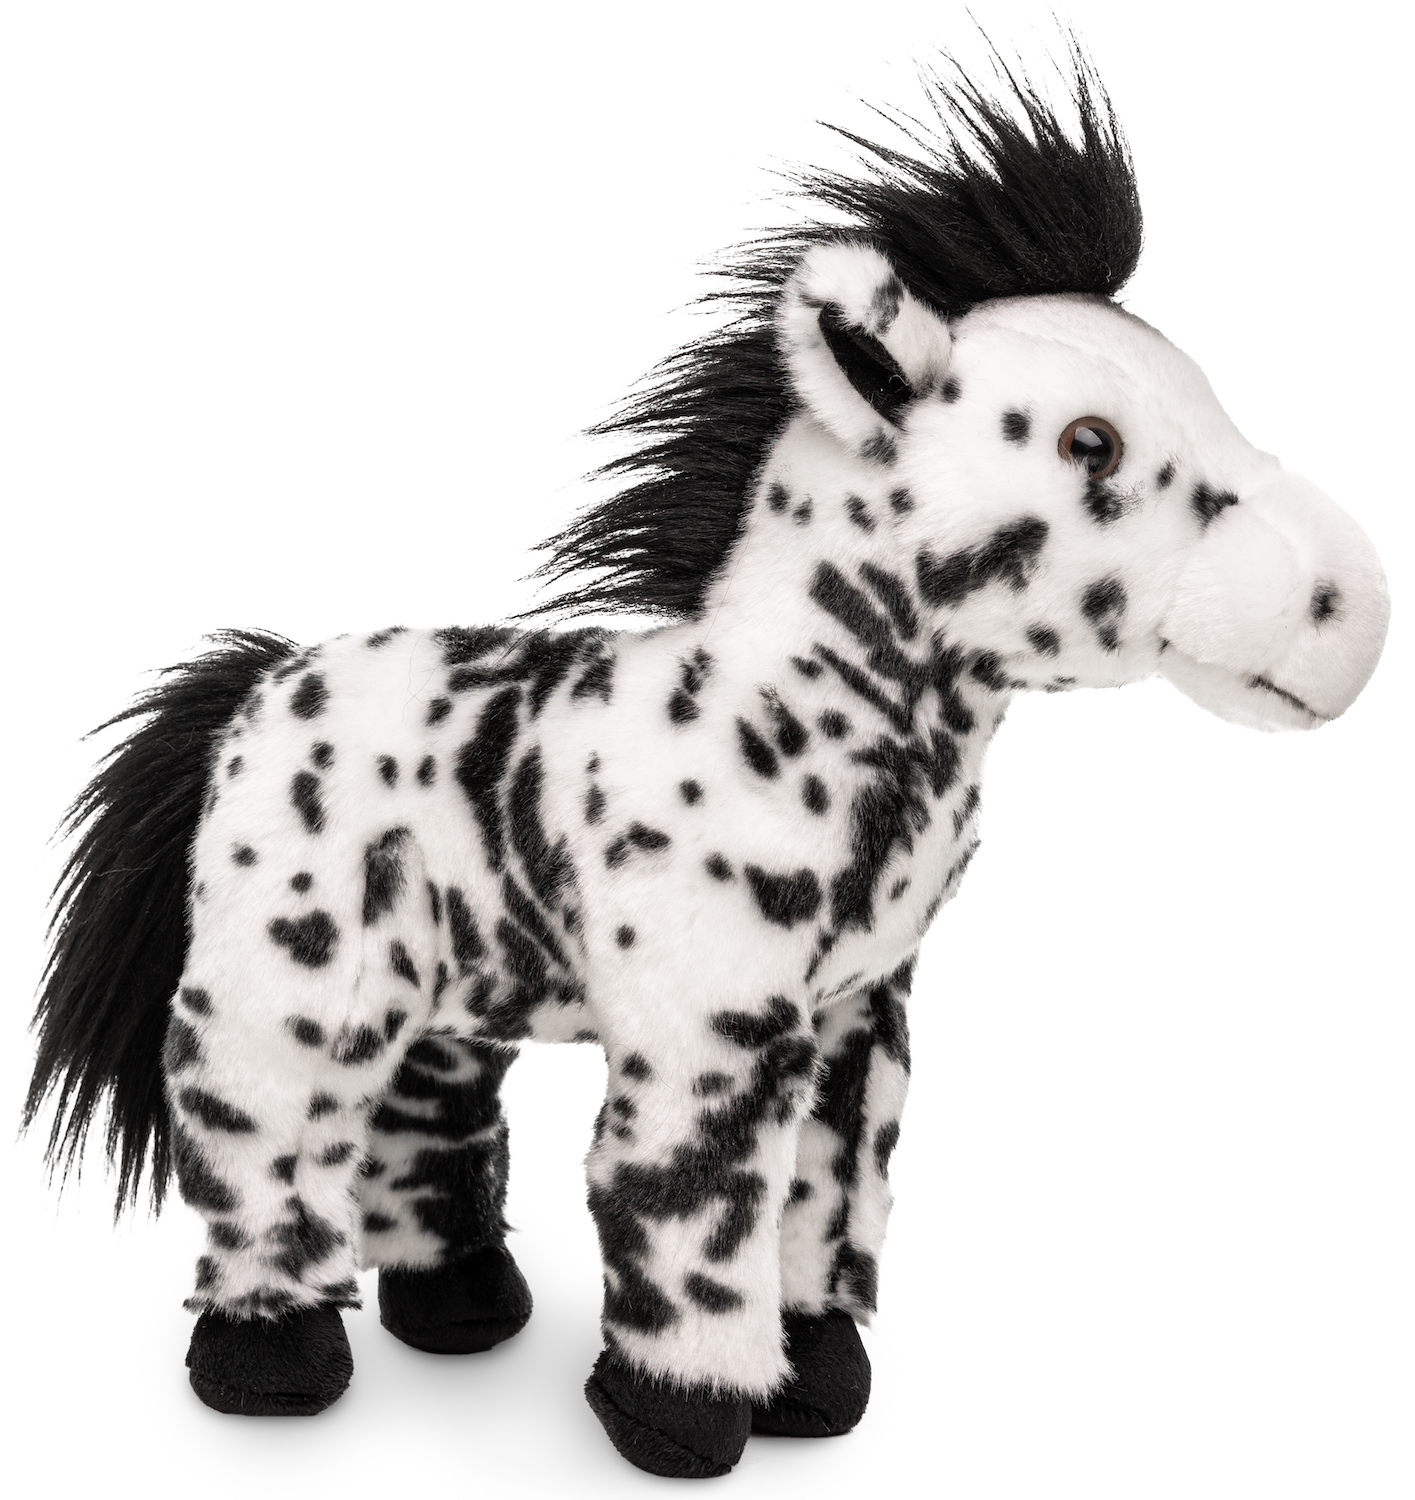 Pferd weiß mit schwarzen Flecken, stehend - 28 cm (Höhe)